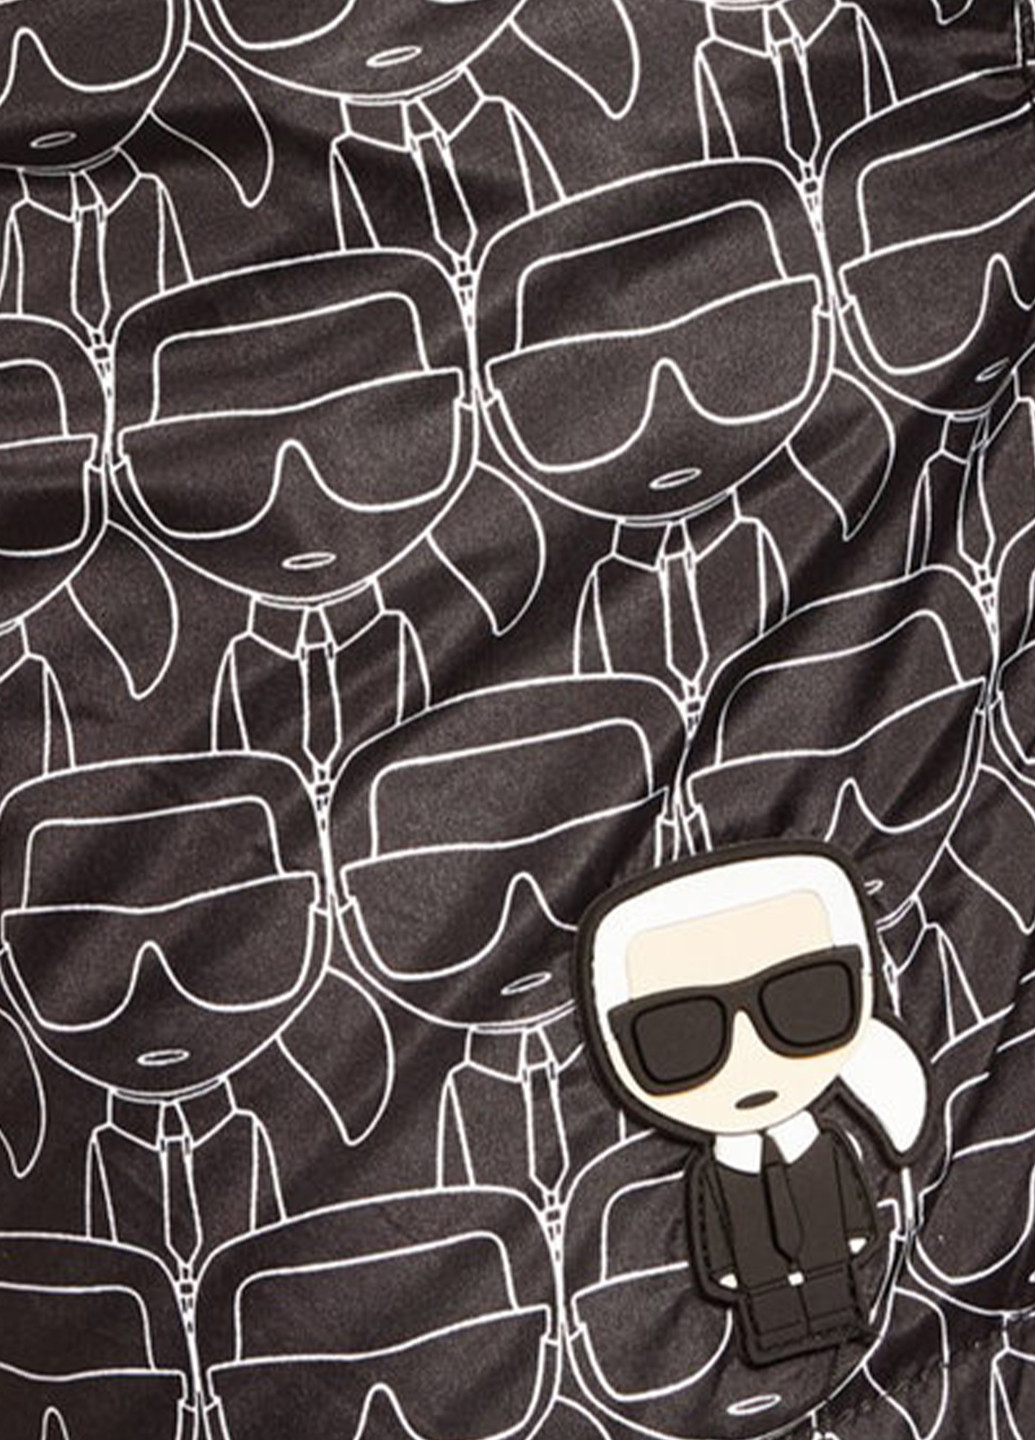 Пляжні шорти з логотипом Karl Lagerfeld (259185181)